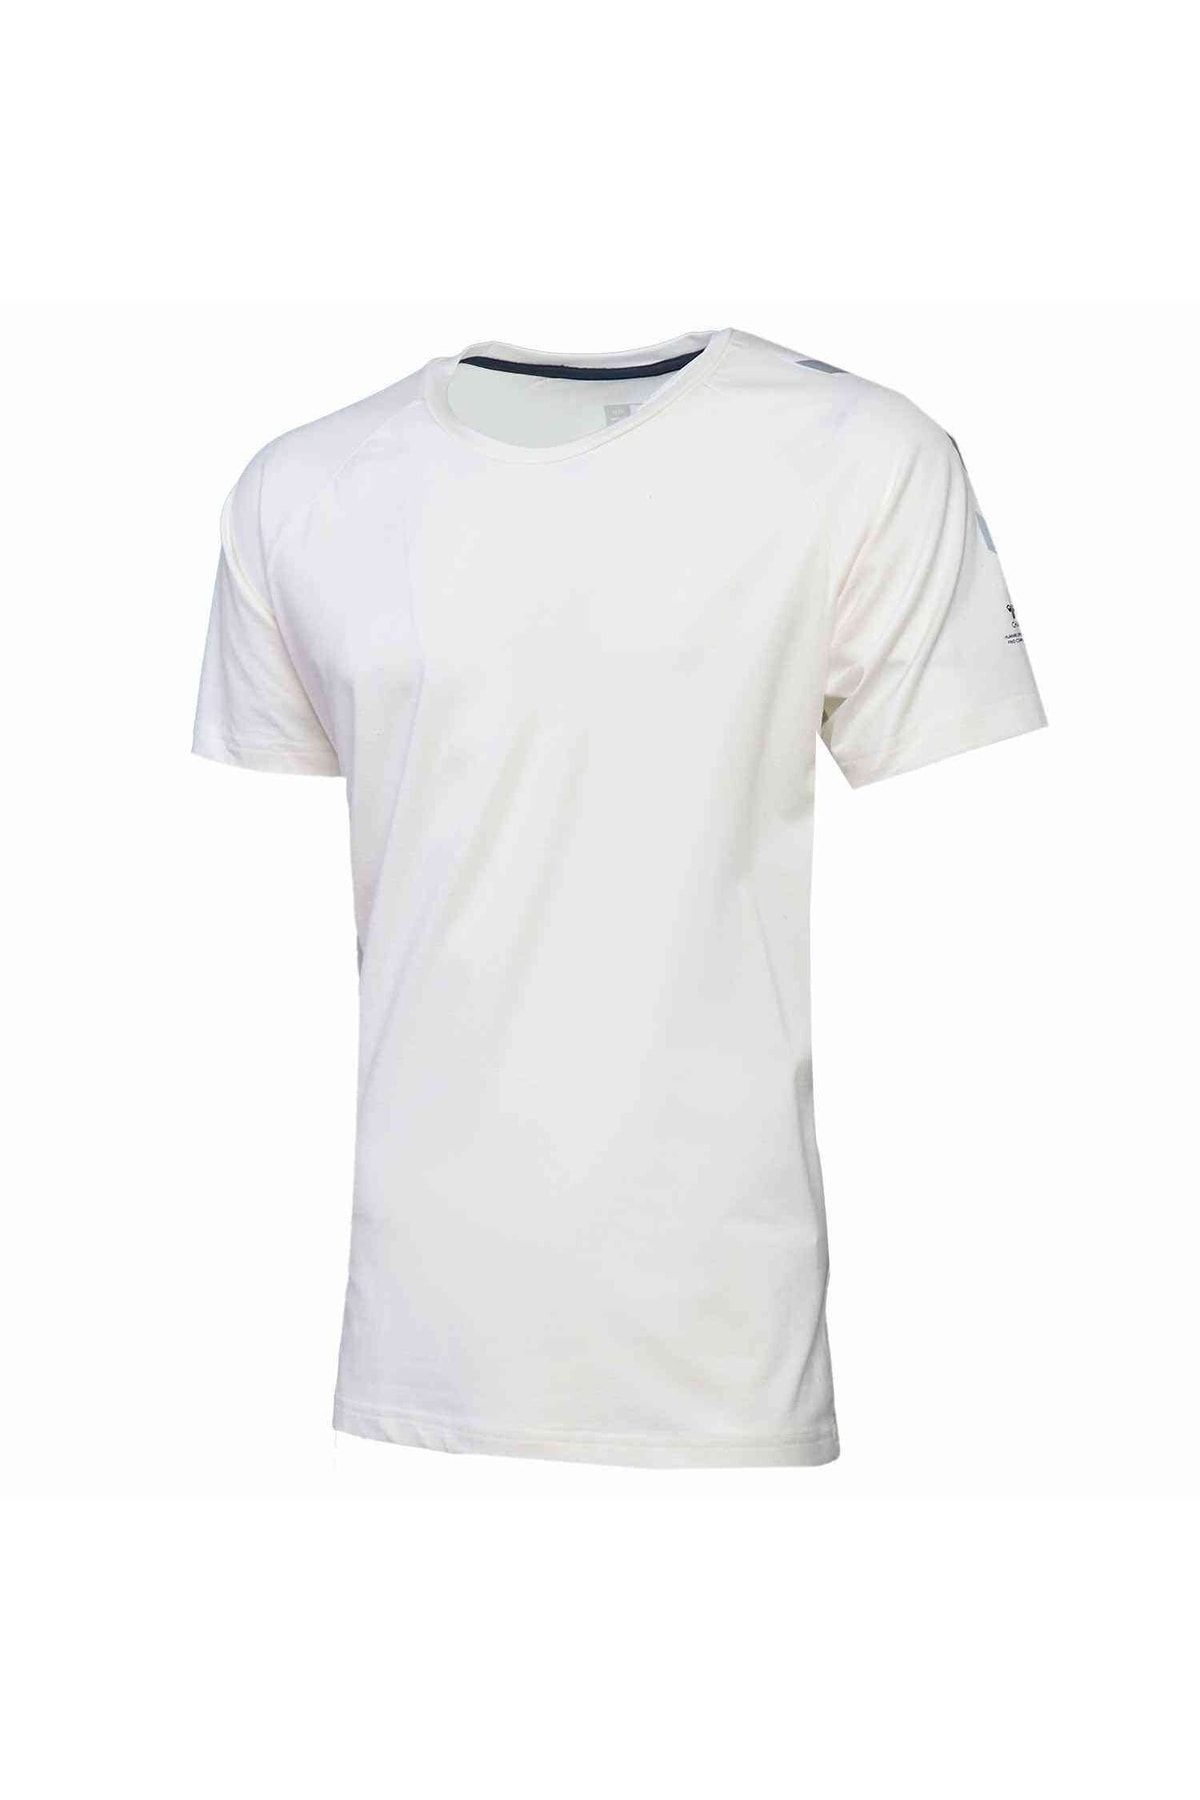 تی شرت ورزش قابل تنفس مردانه سفید هومل Hummel (برند دانمارک)